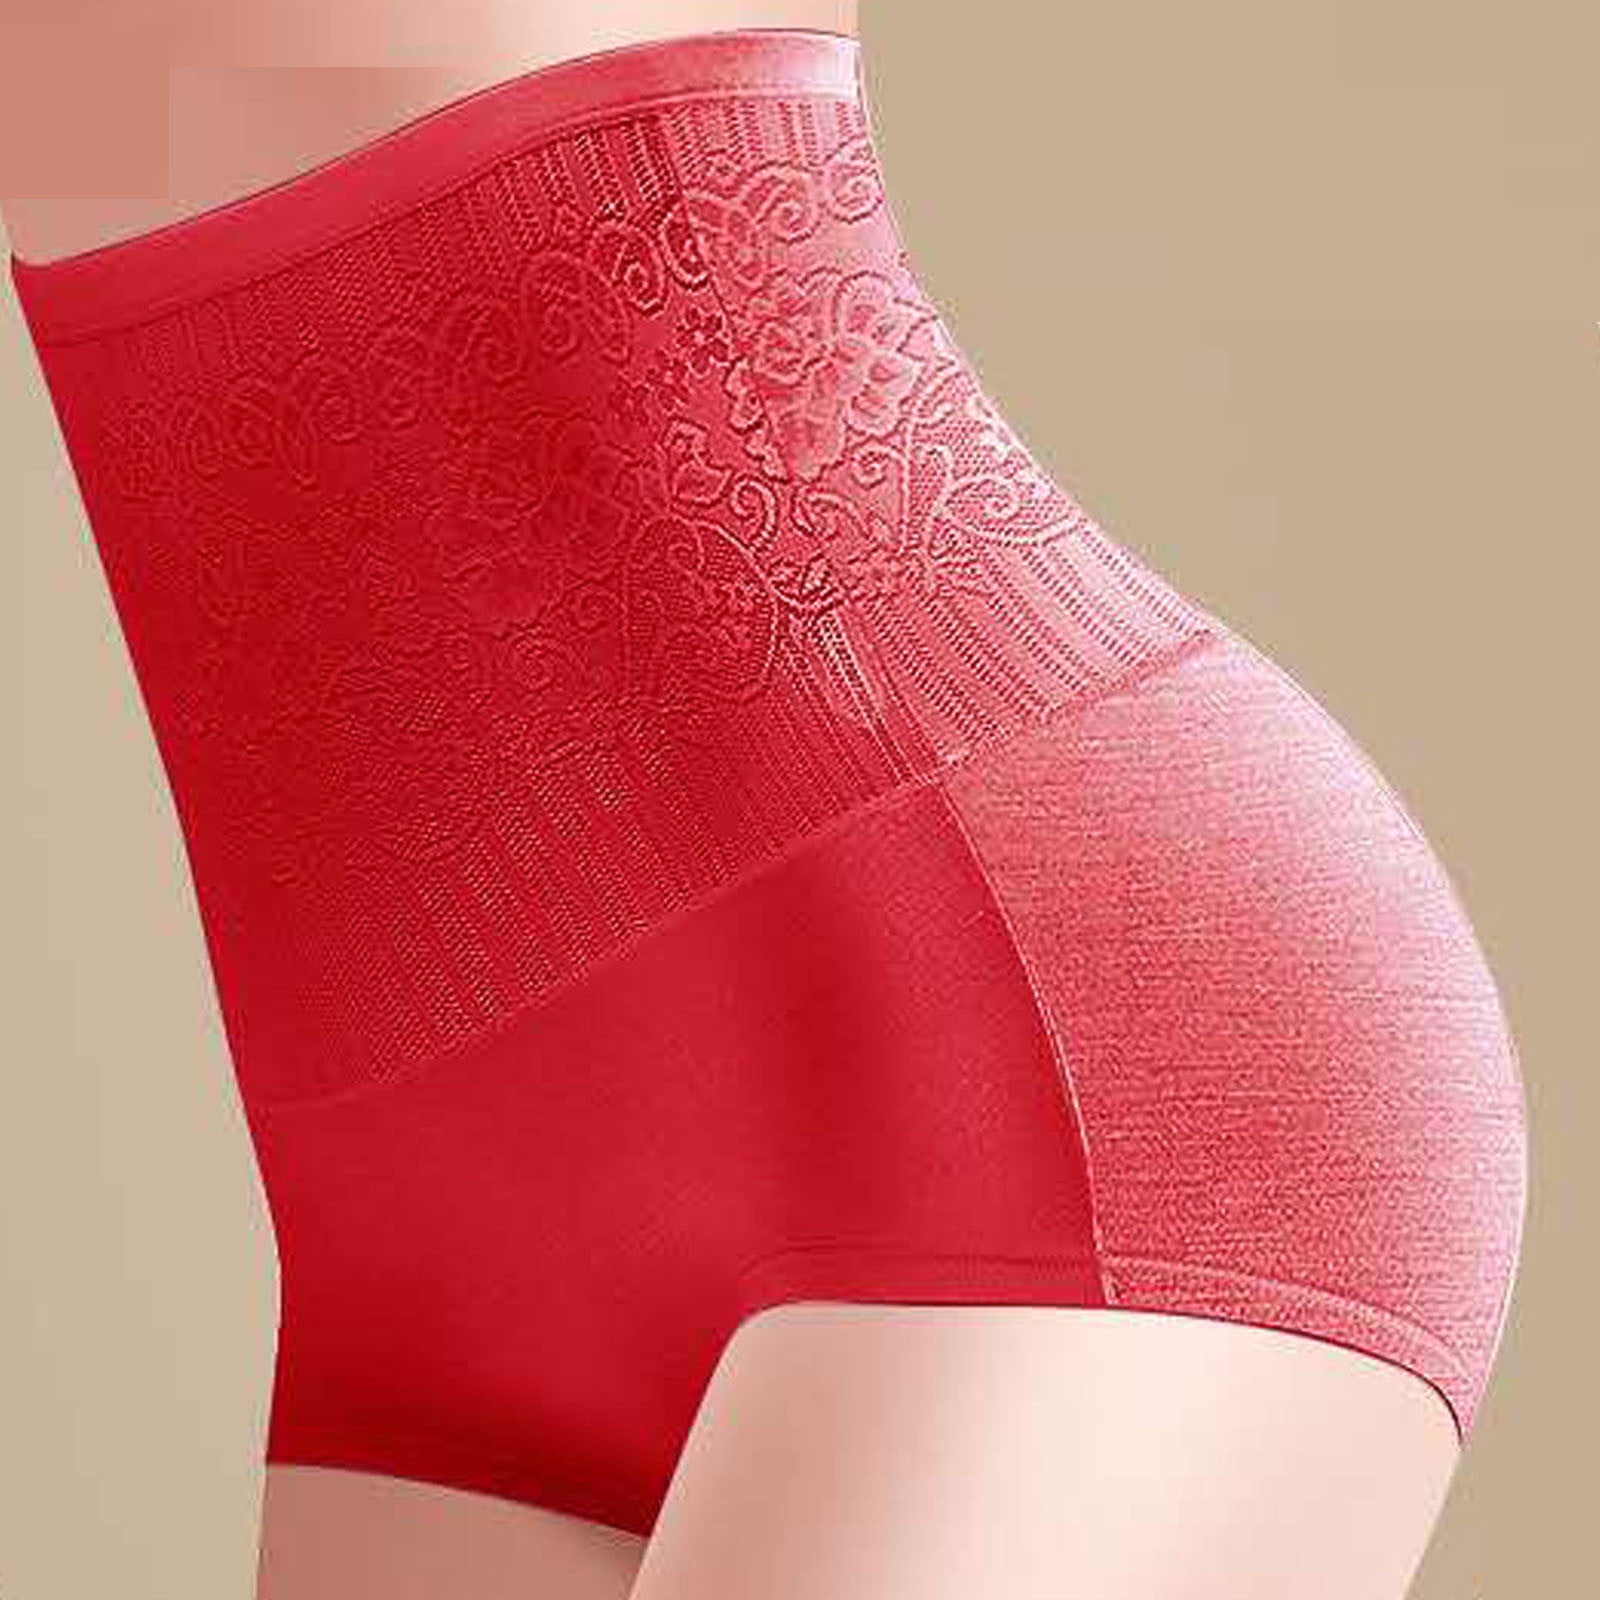 Aueoeo High Waisted Underwear For Women Bulk Underwear For